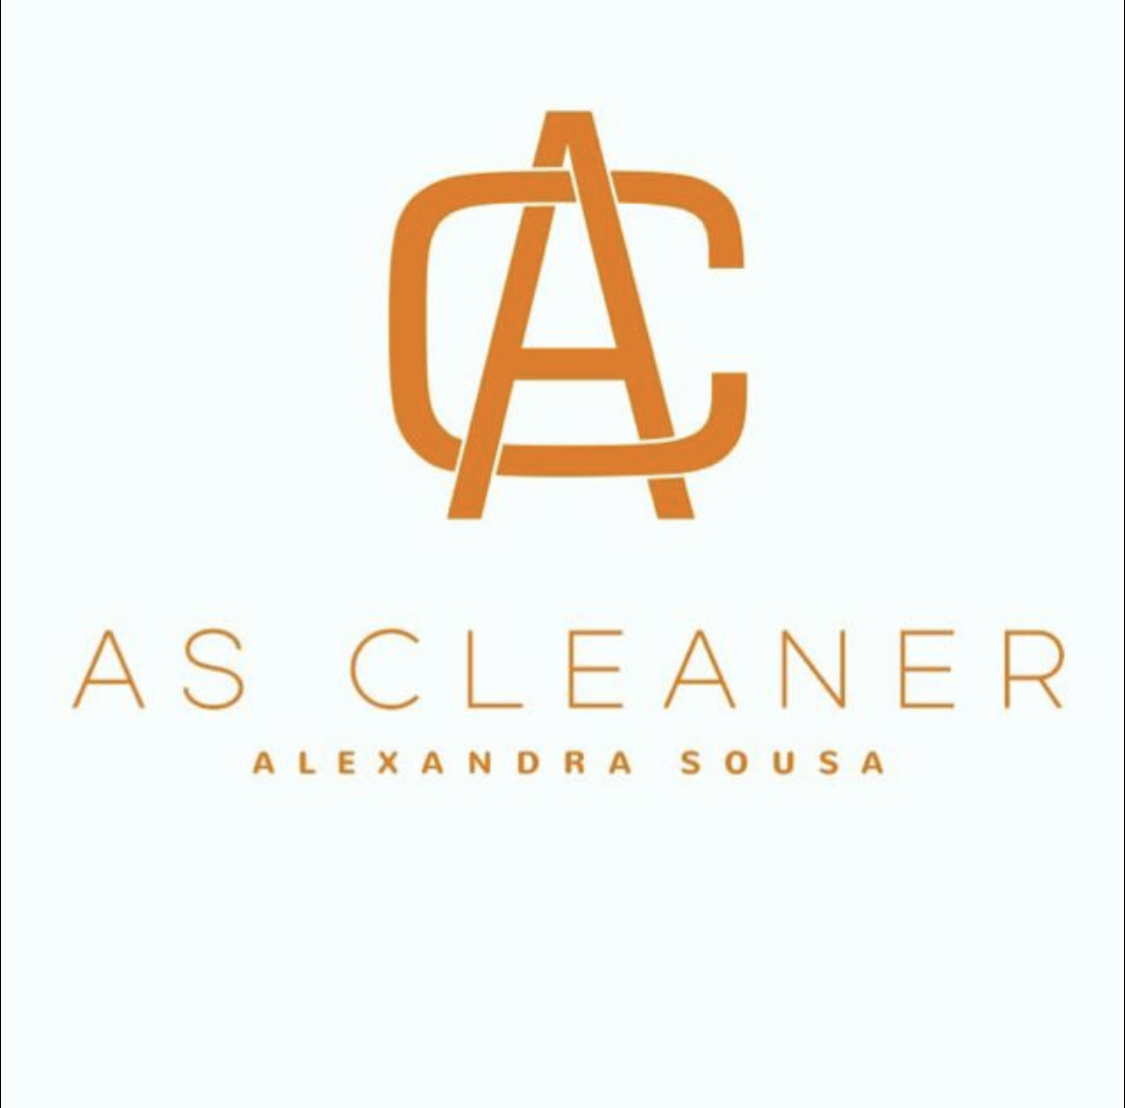 A.S Cleaner - Prestação de Serviços - Gondomar - Limpeza de Espaço Comercial